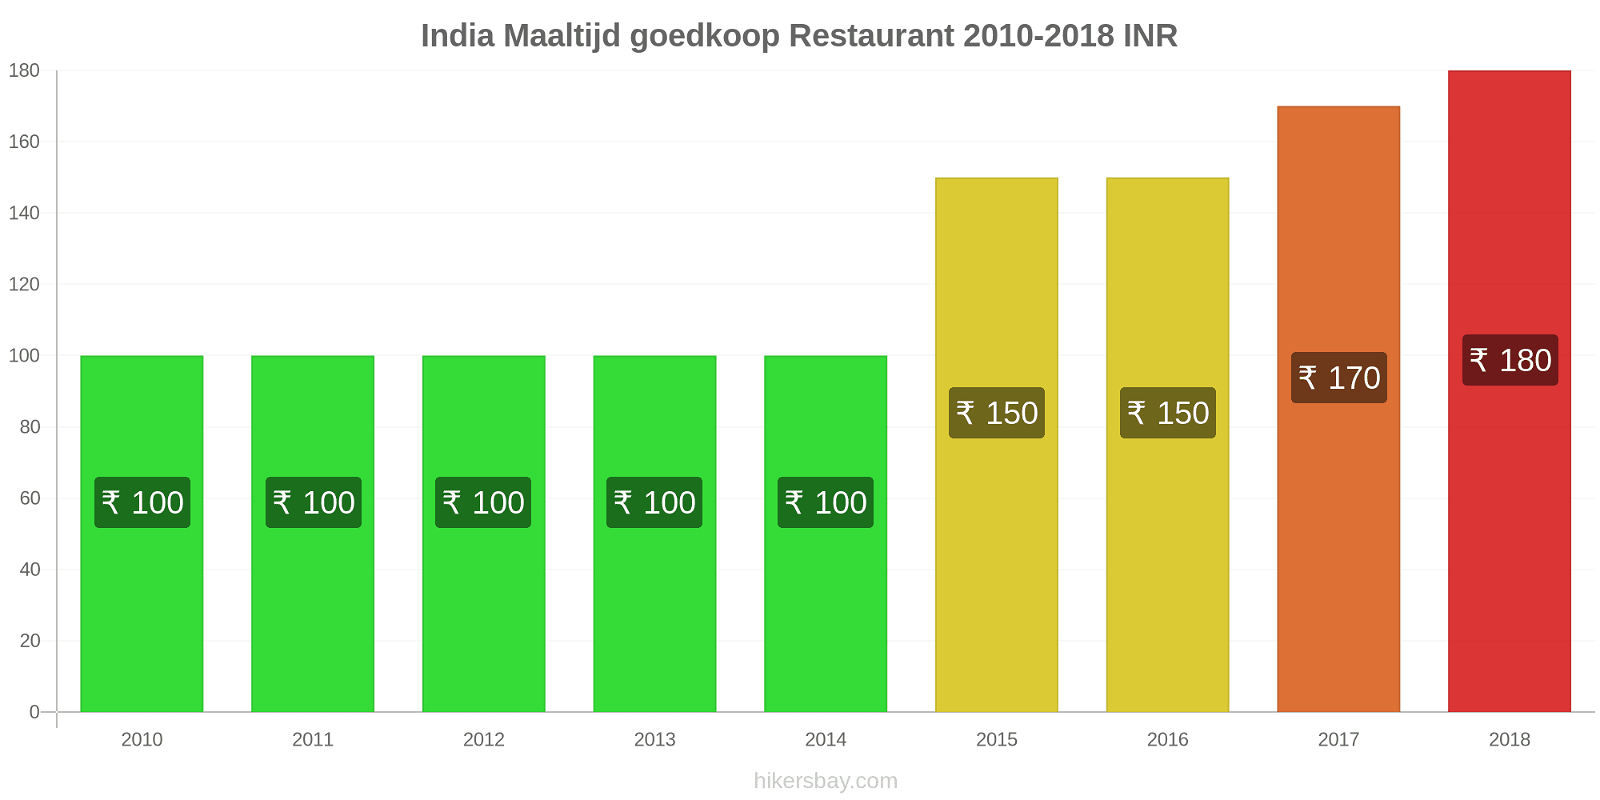 India prijswijzigingen Maaltijd in een goedkoop restaurant hikersbay.com